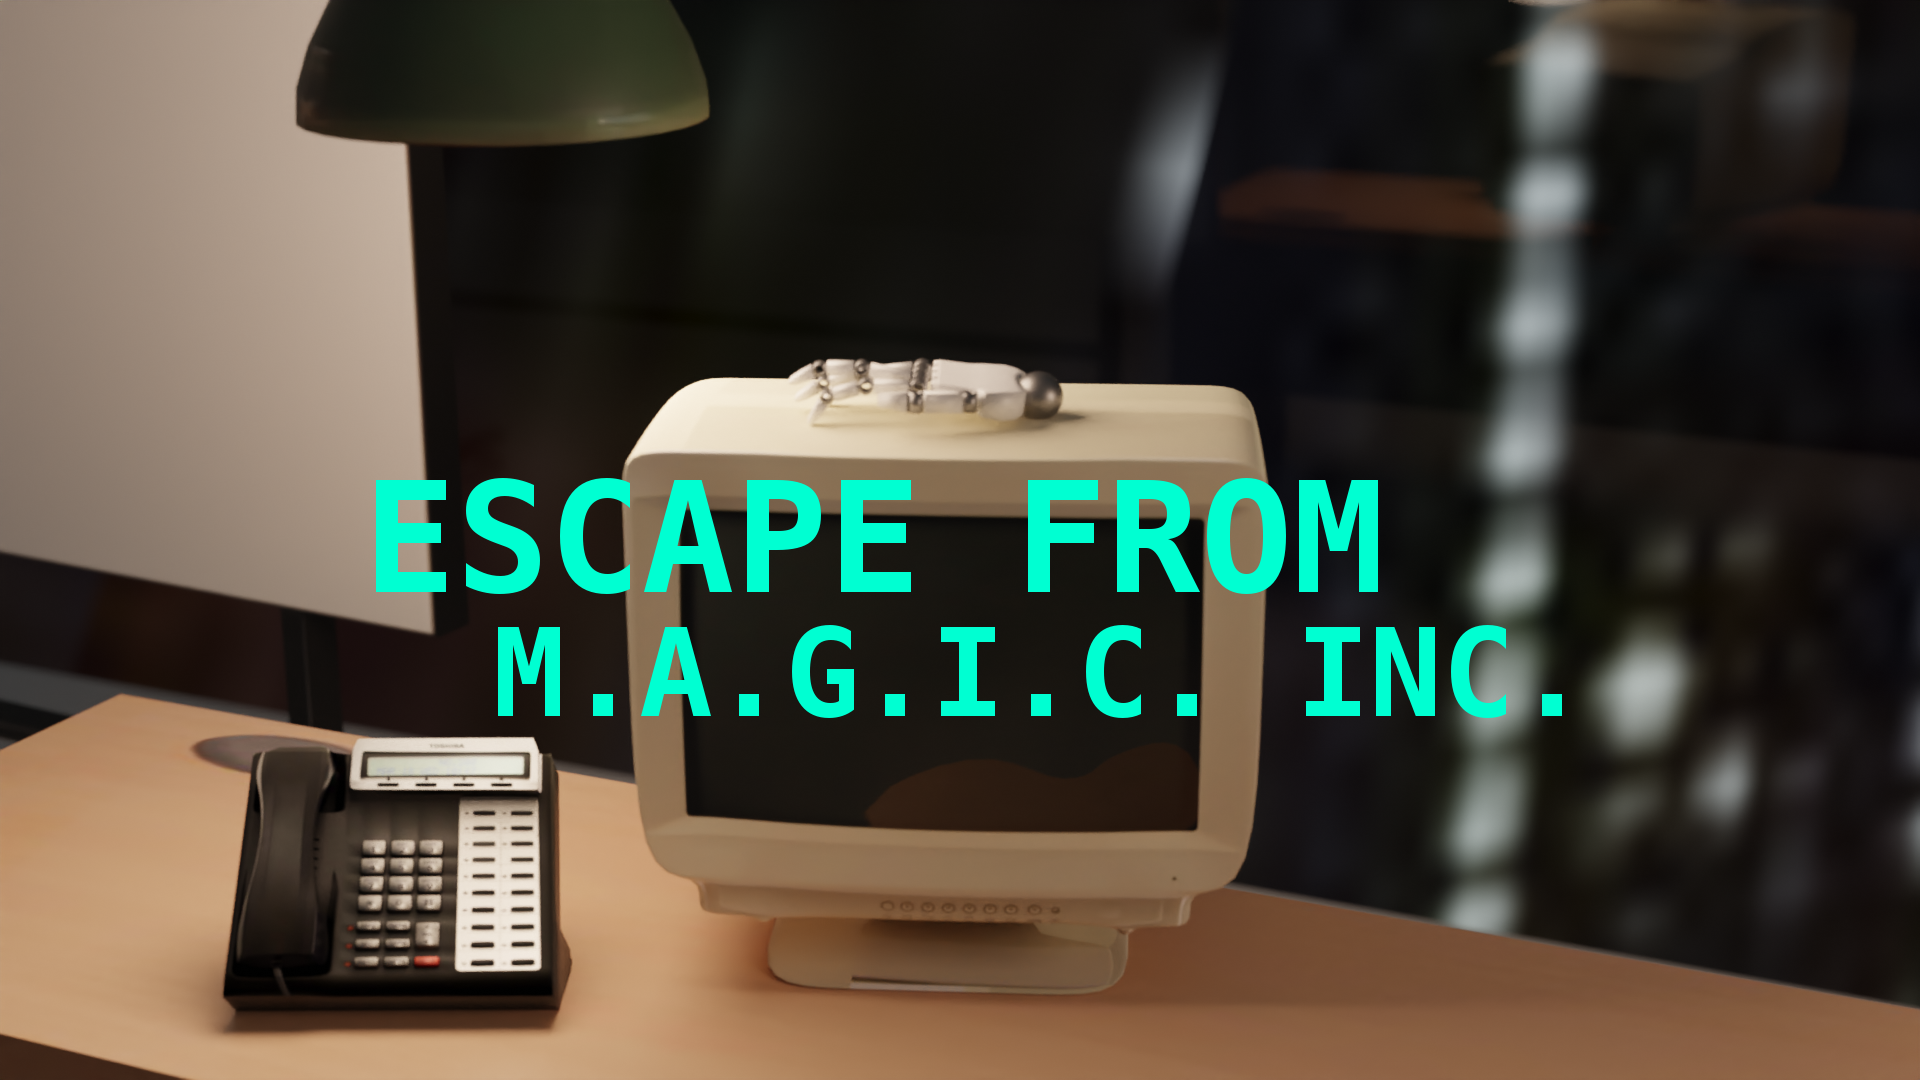 Escape-logo